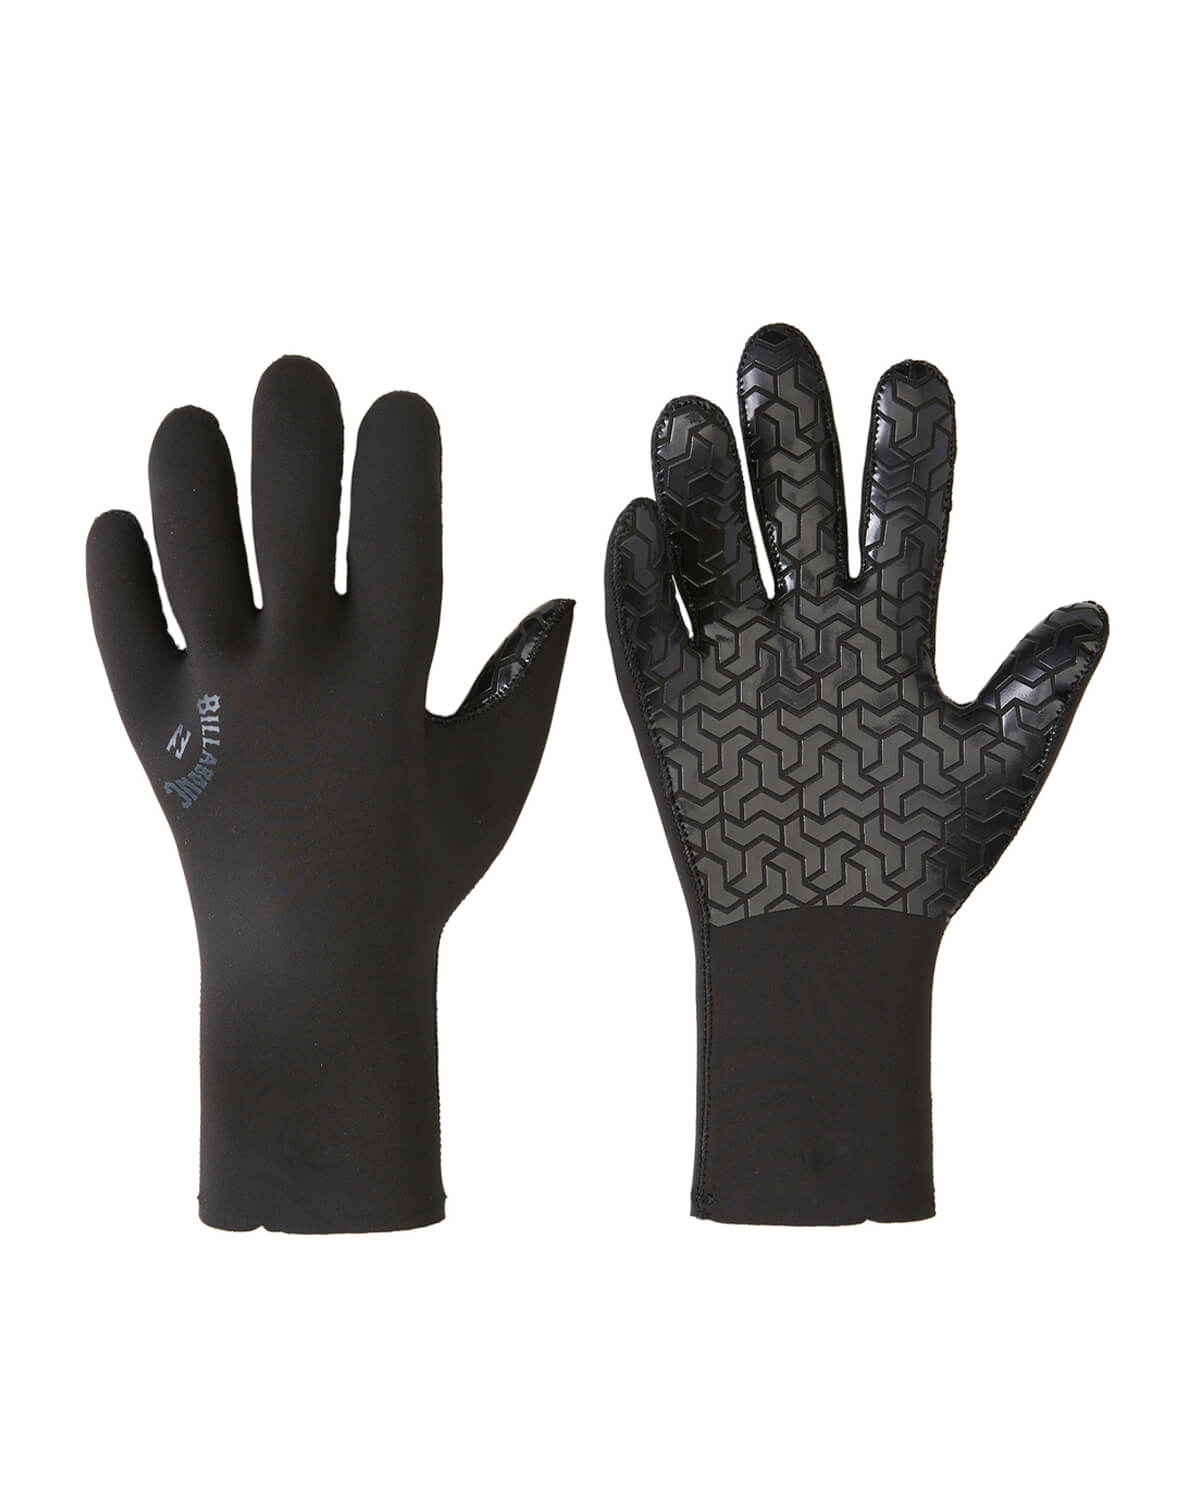 5mm Billabong ABSOLUTE Wetsuit Gloves